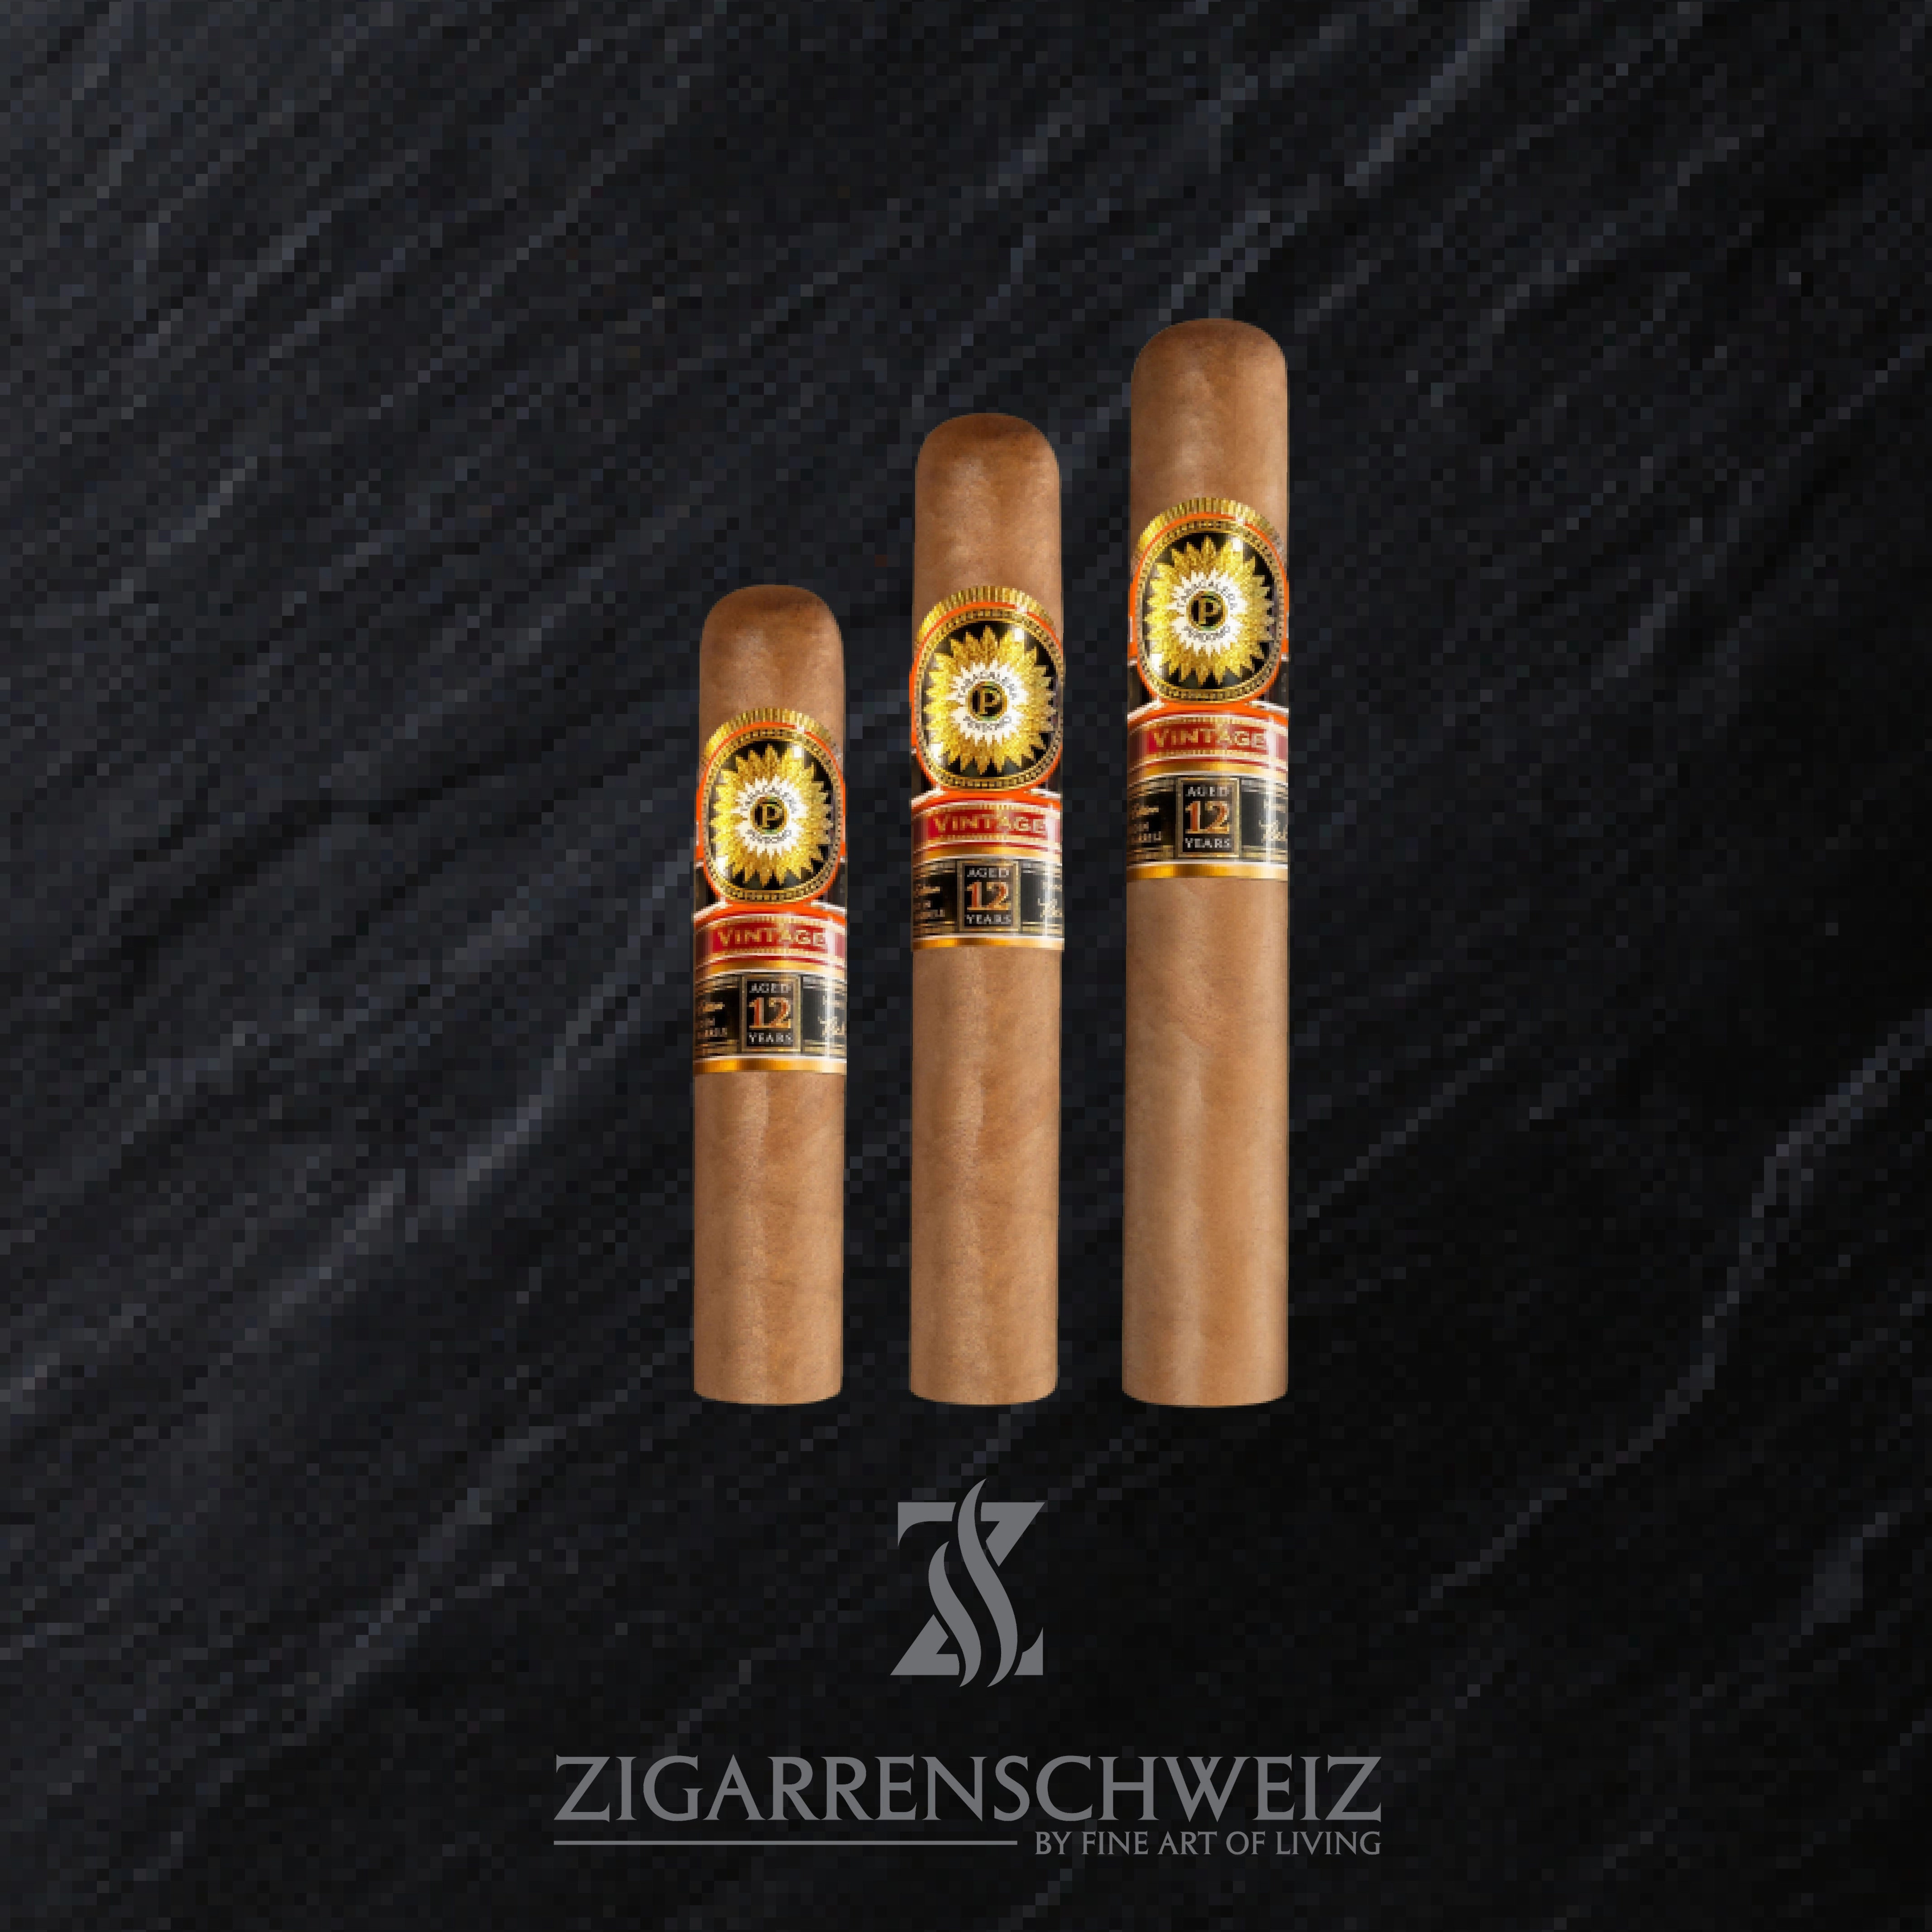 Perdomo Double Aged 12 Years Vintage Connecticut Zigarren - Ein Meisterwerk der Tabakkunst